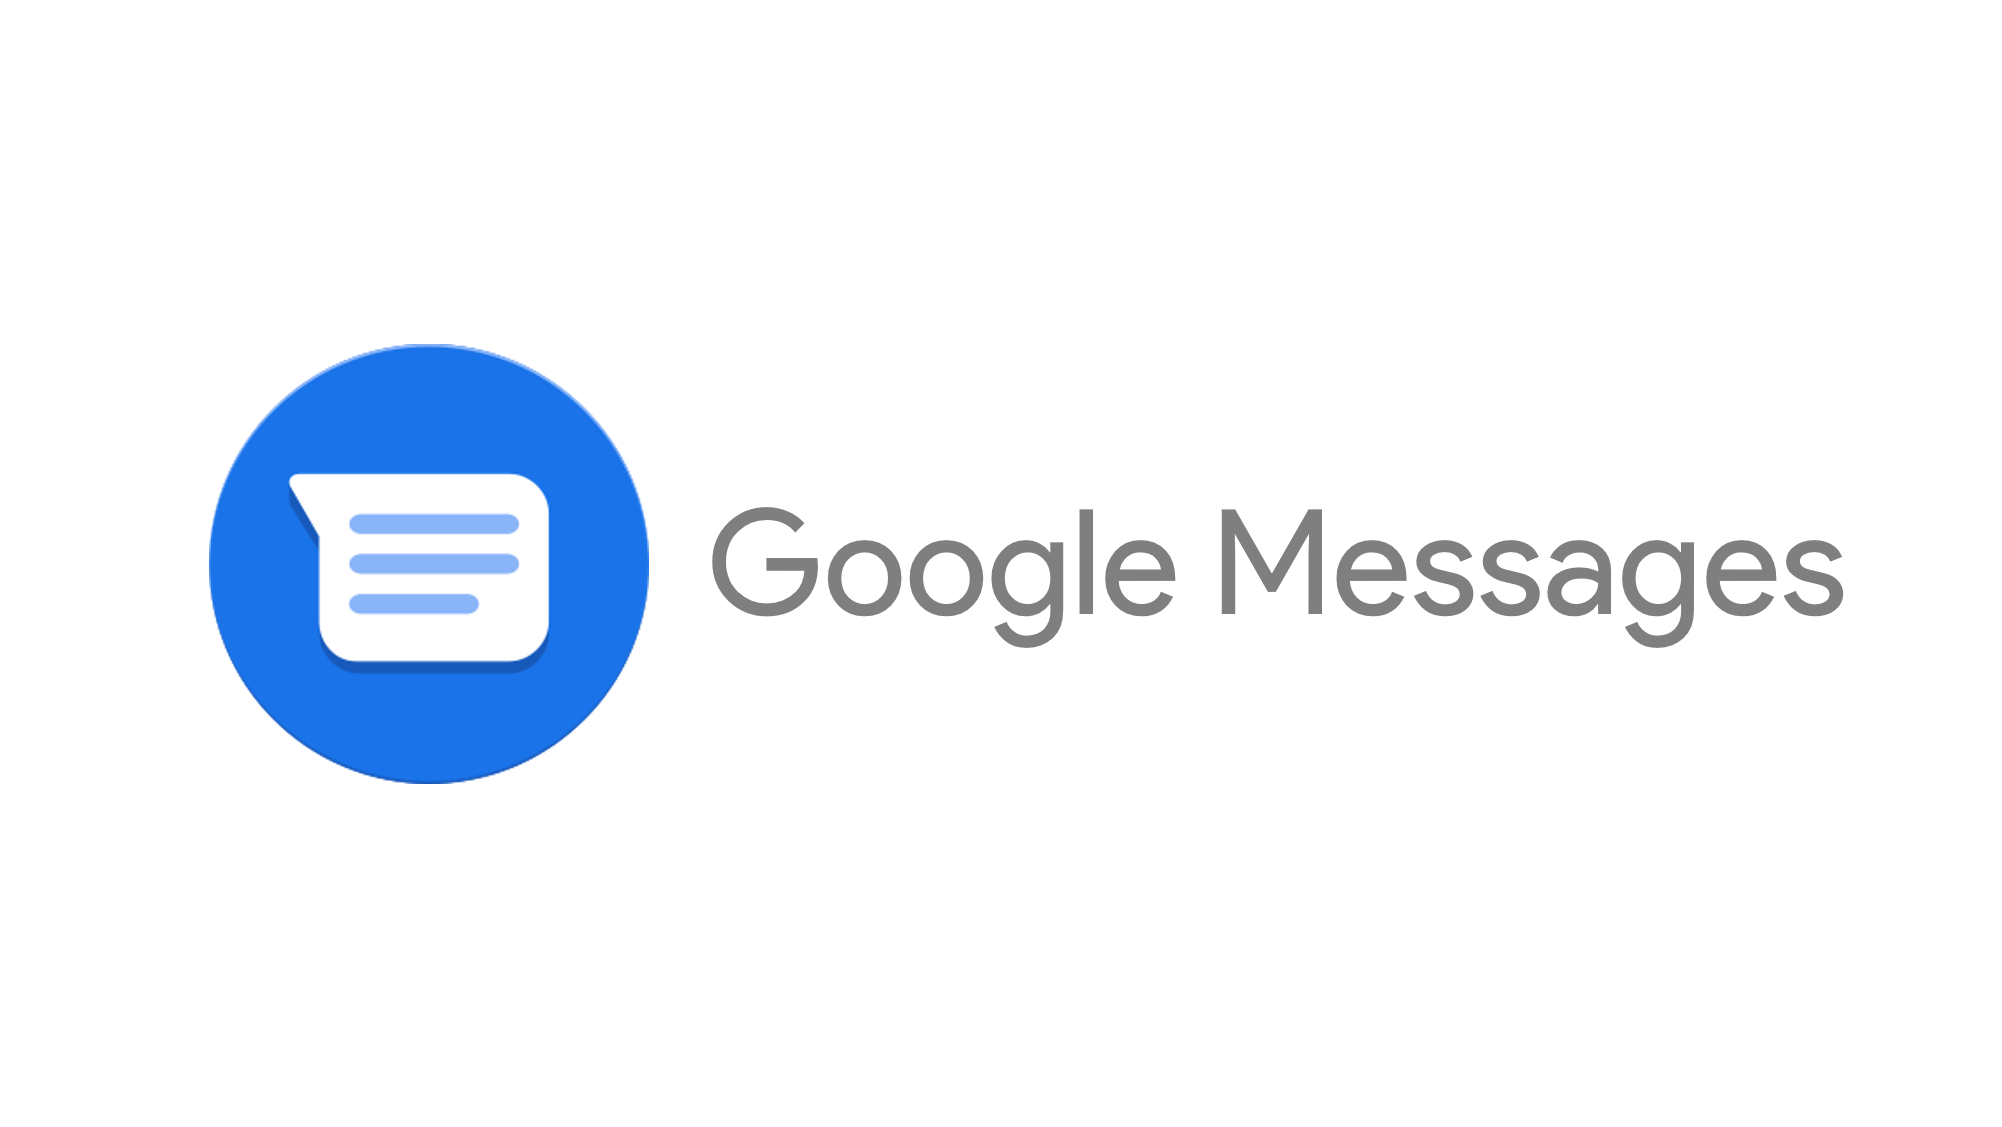 Https messages google. Google messages. Гоогле месагес мессагес гугл. Лого сообщения Google. Google messages app.